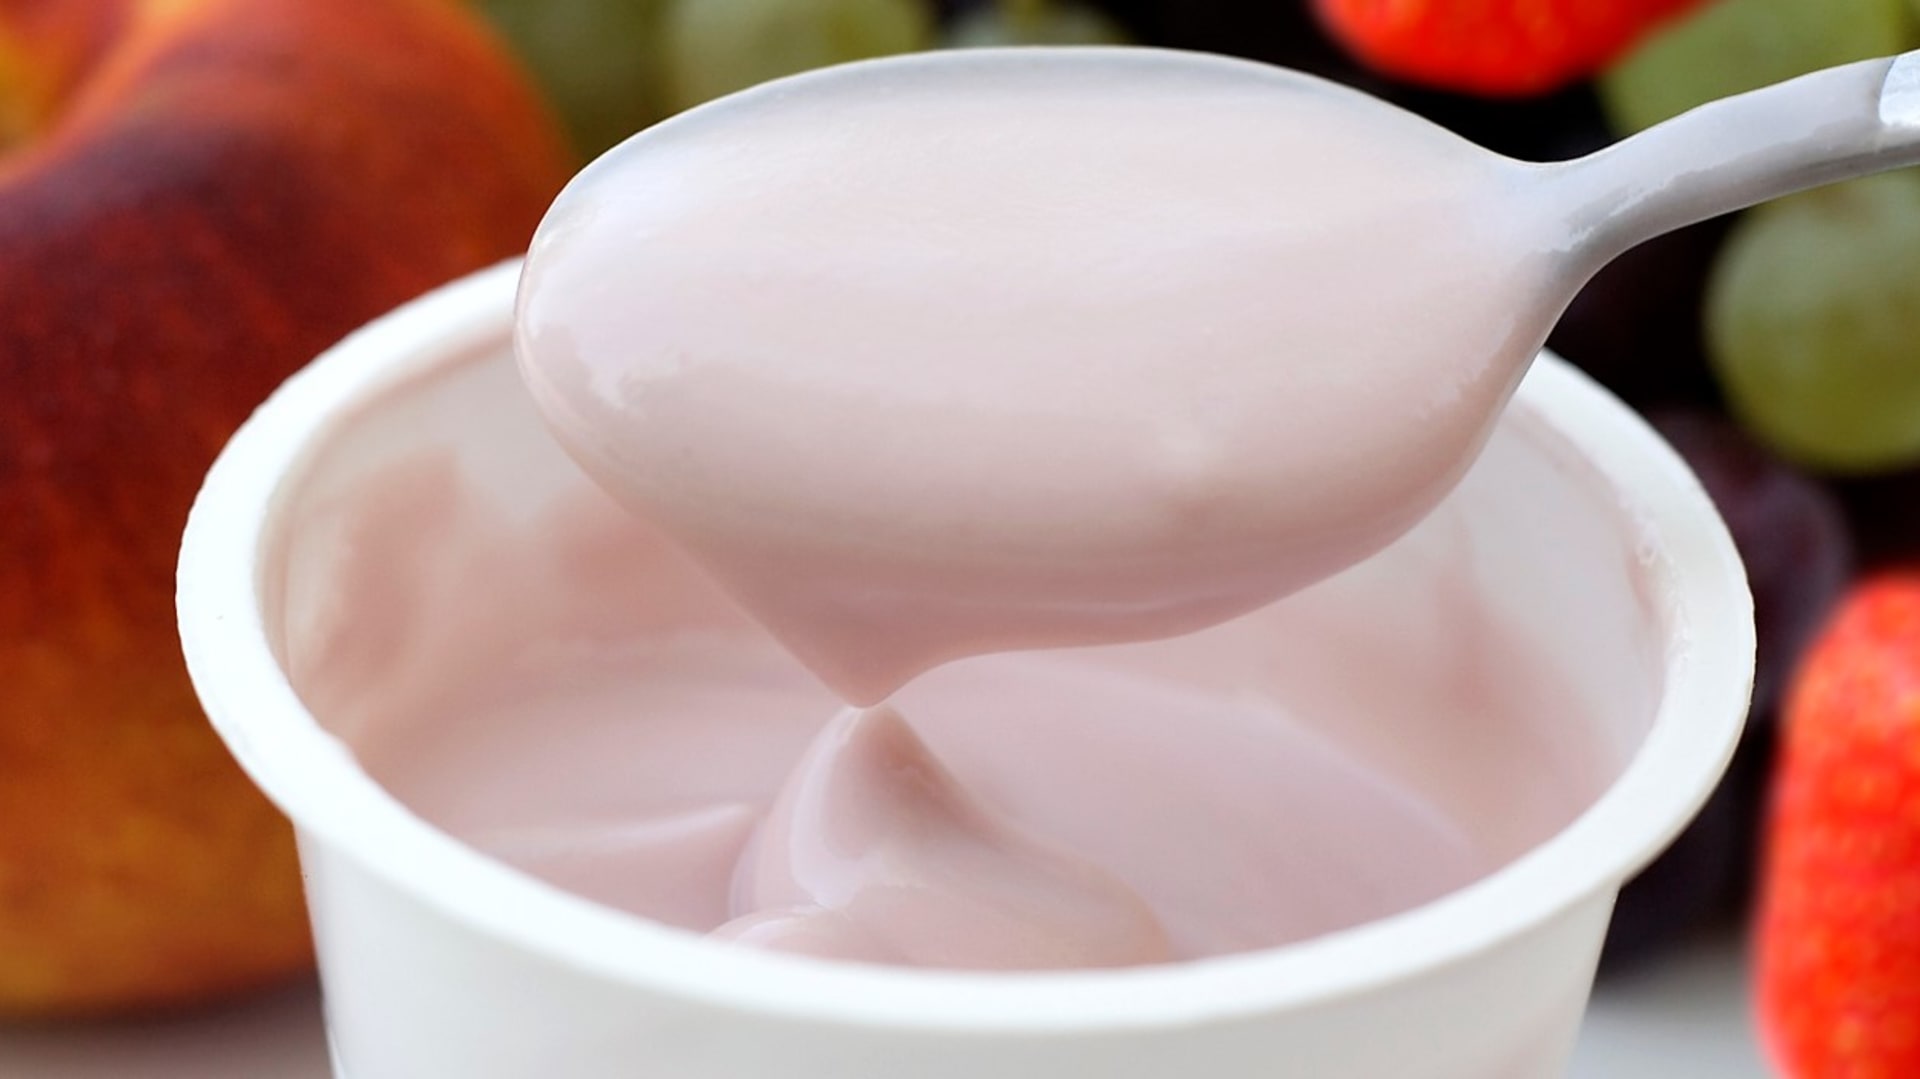 Kdo chce mít v jogurtu opravdu ovoce, měl by preferovat  tzv,. ochucené výrobky. Označují se třeba jako jahodový/jahoda. Jestliže je ale na jogurtu uvedeno s jahodovou příchutí/s příchutí jahod, nemusí vněm být vůbec žádné ovoce.